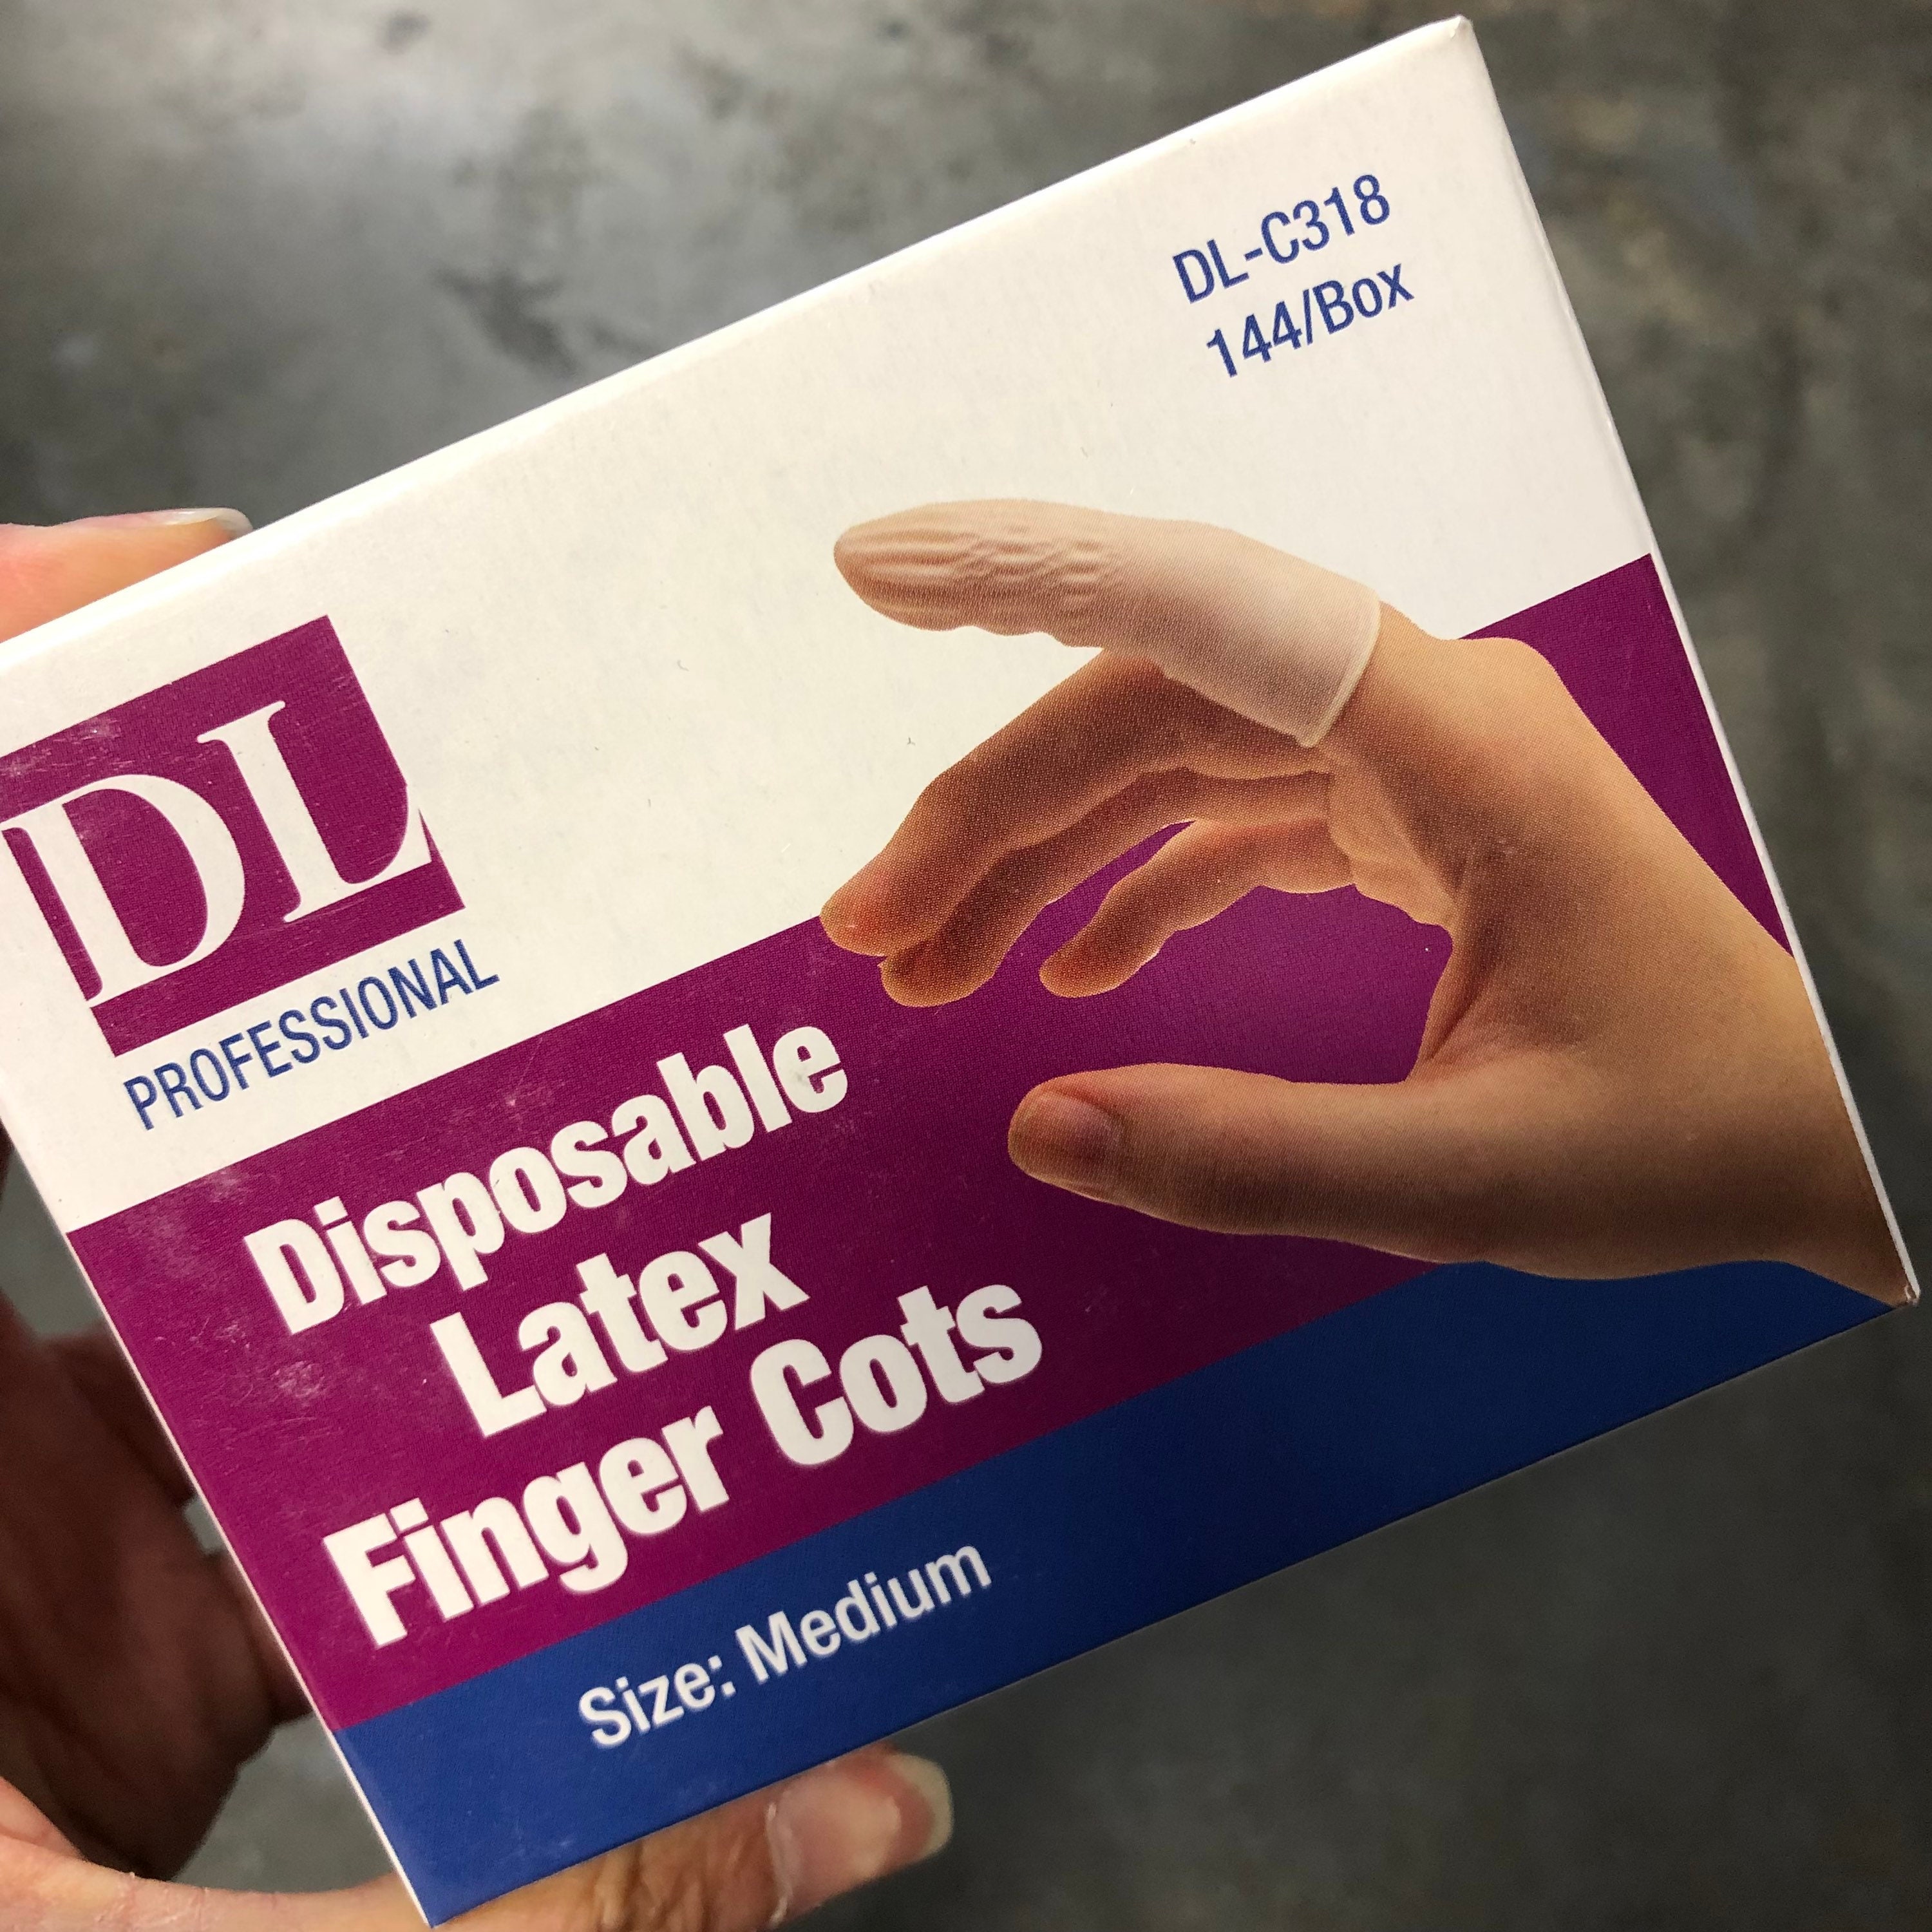 144-PCS/ Disposable Finger Cots